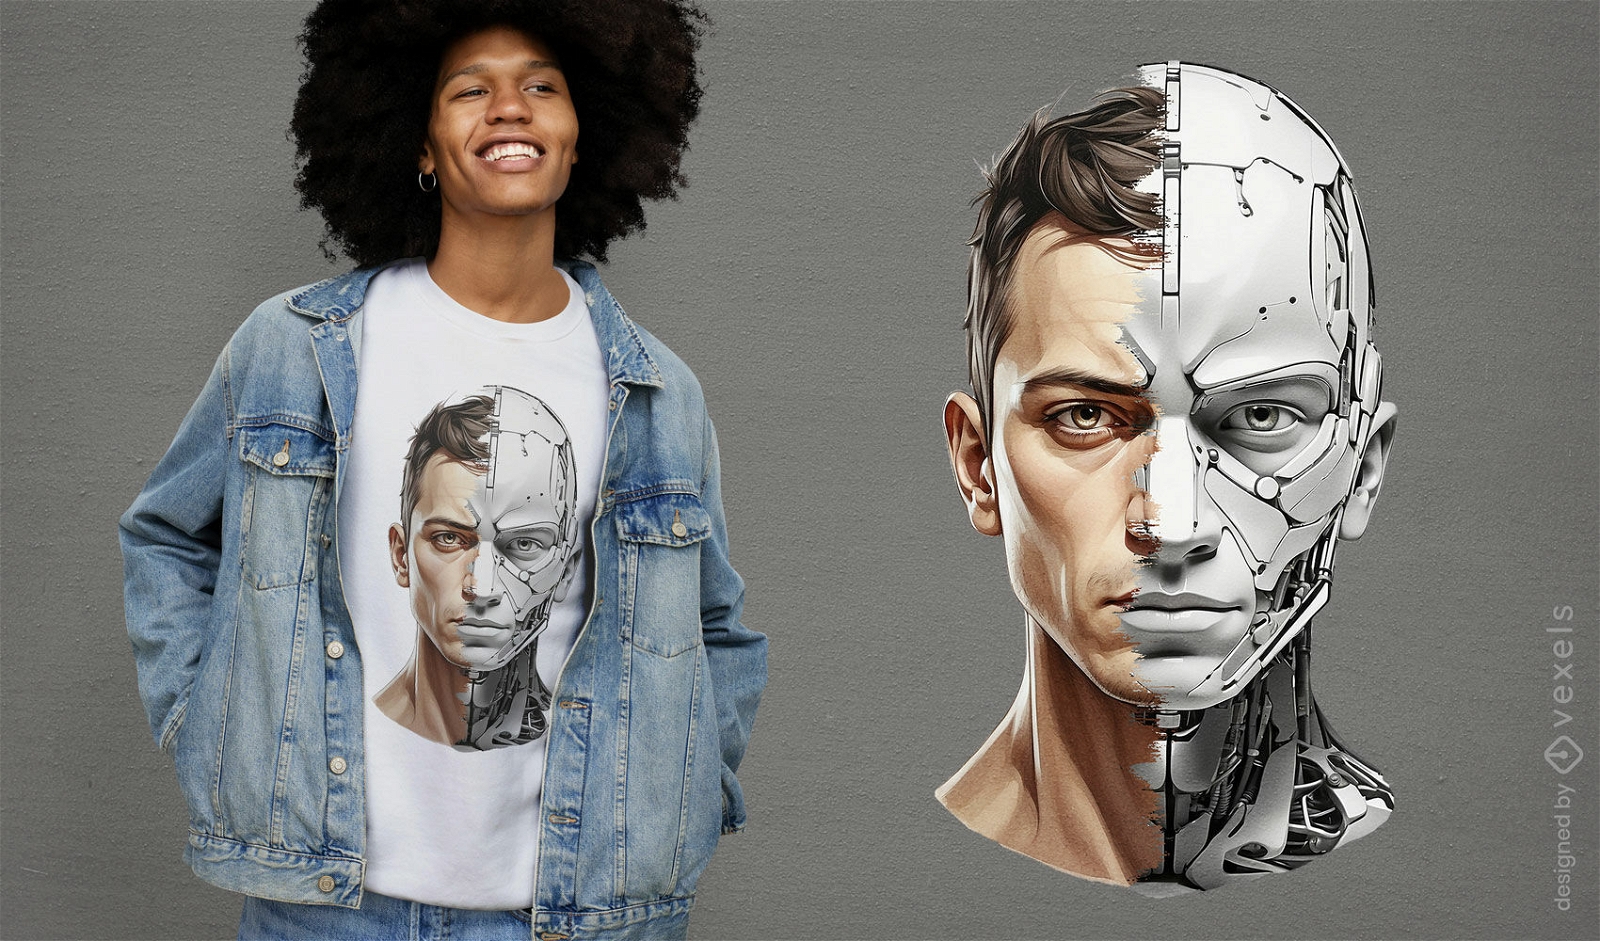 Robot face t-shirt design